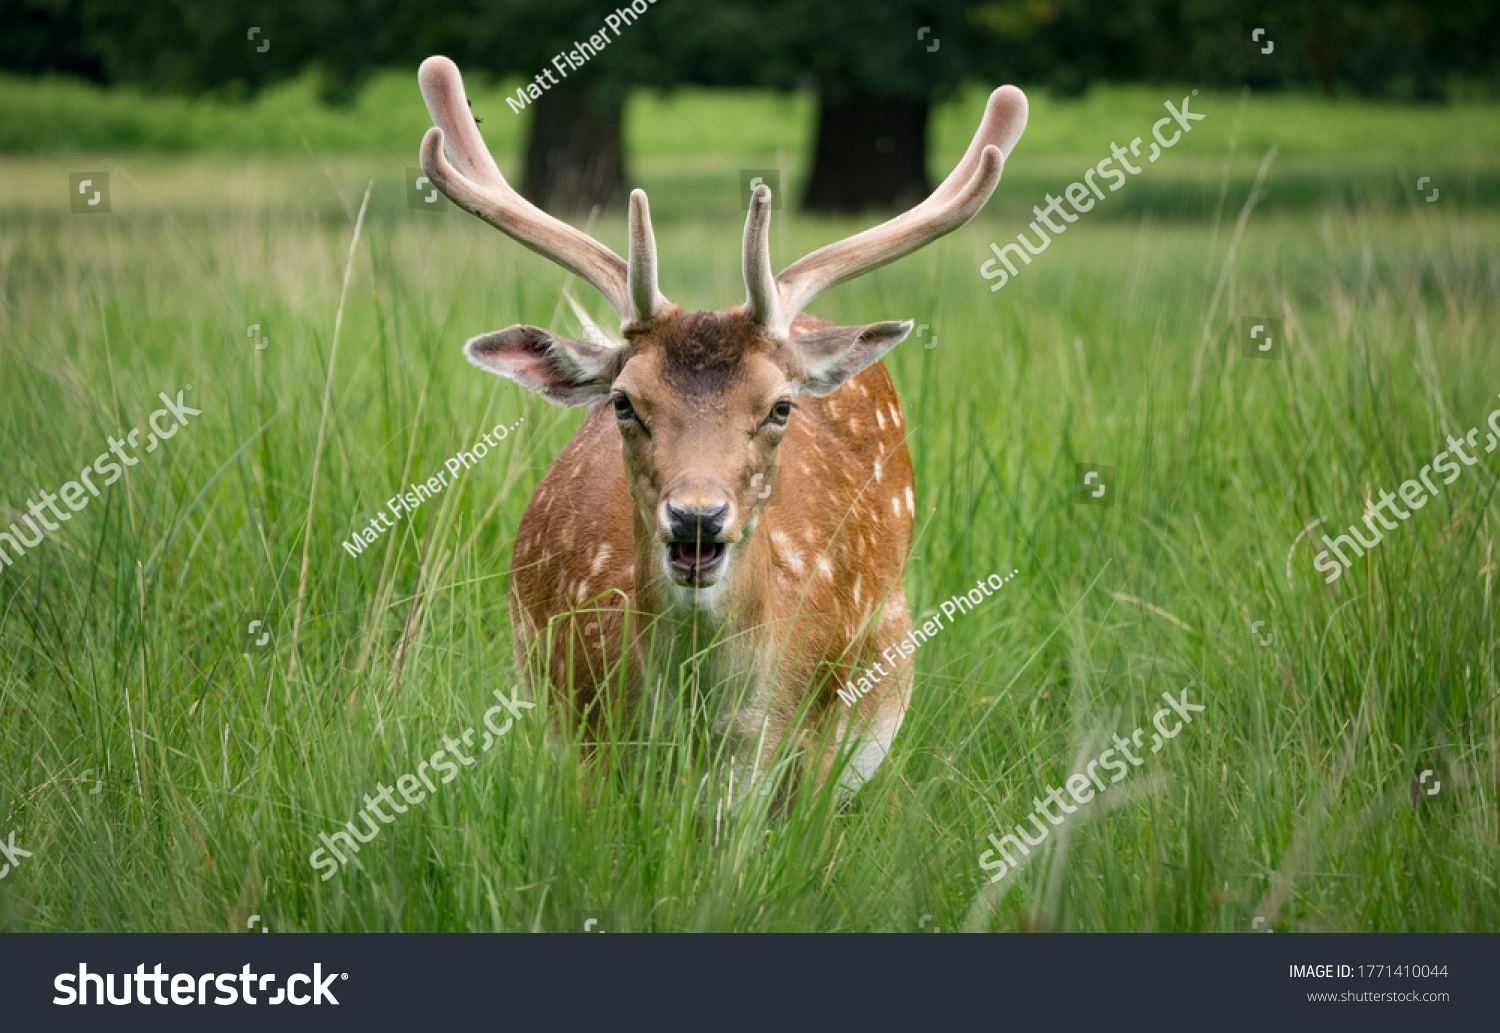 Deer in long grass at Dunham Massey #1771410044